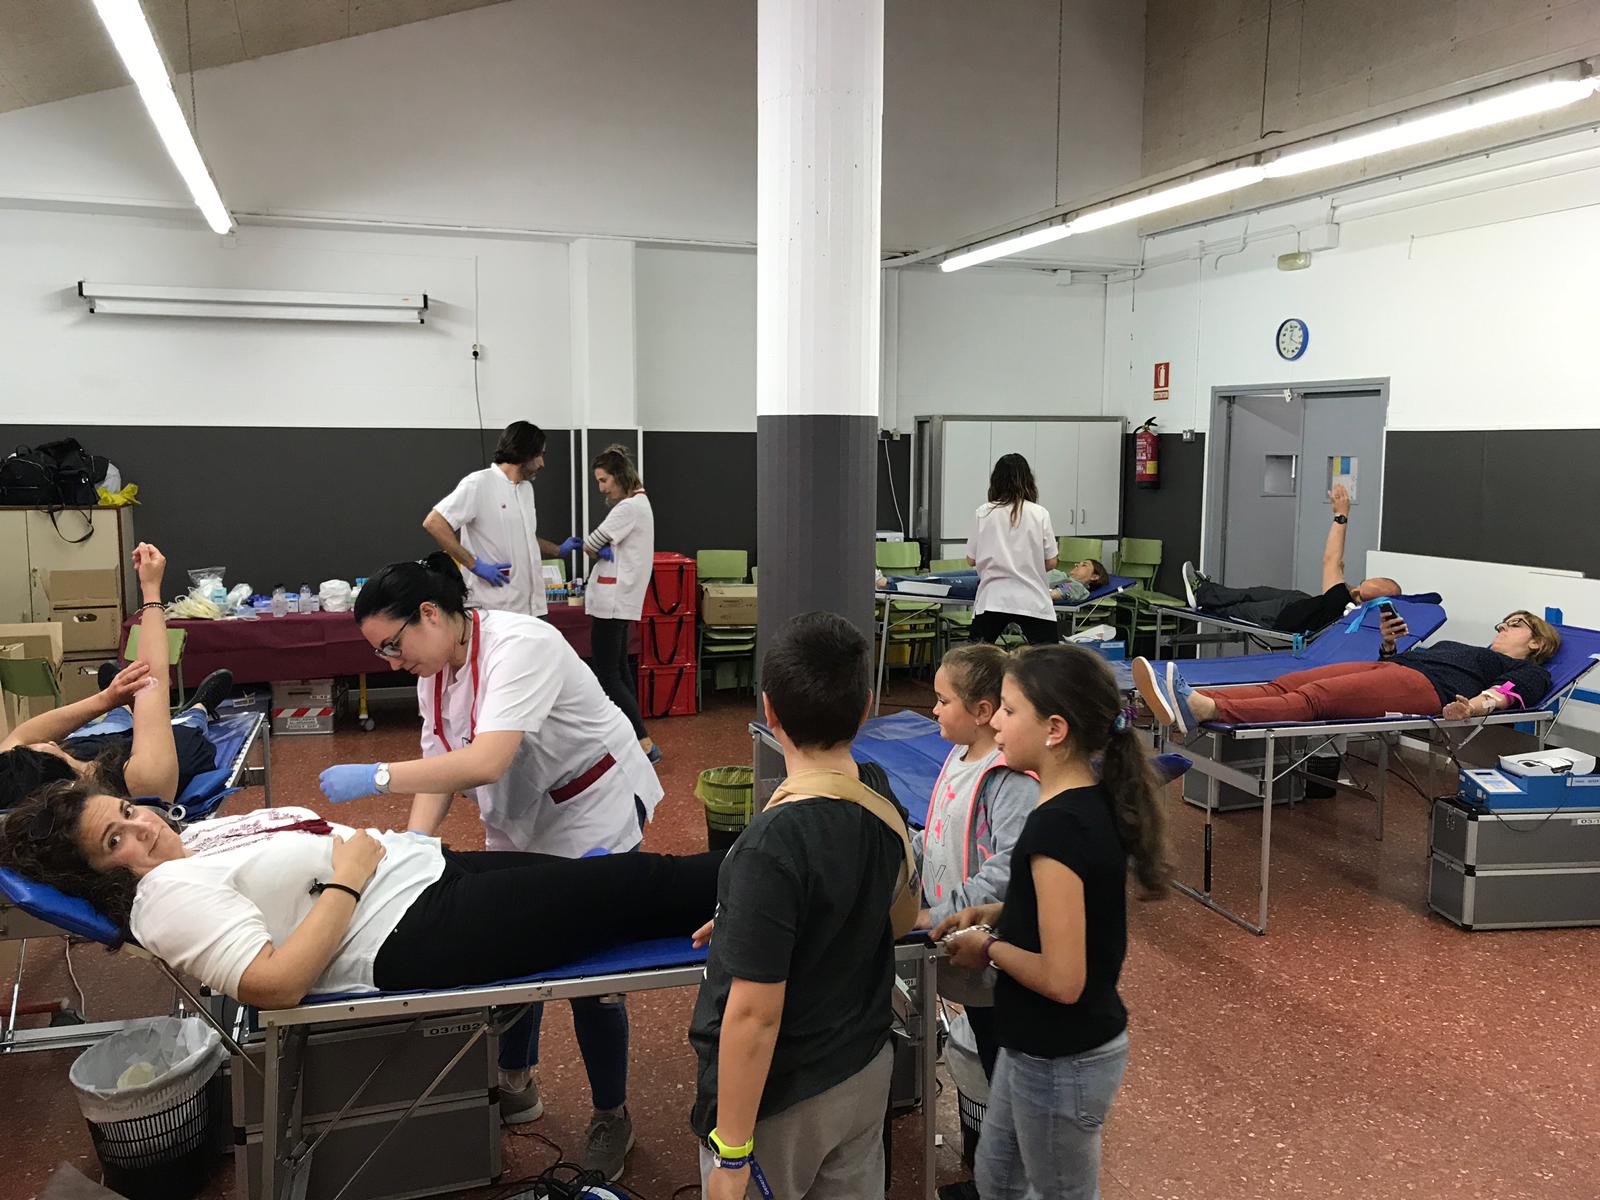 Donació sang escola Josep Pla 2019 04ç